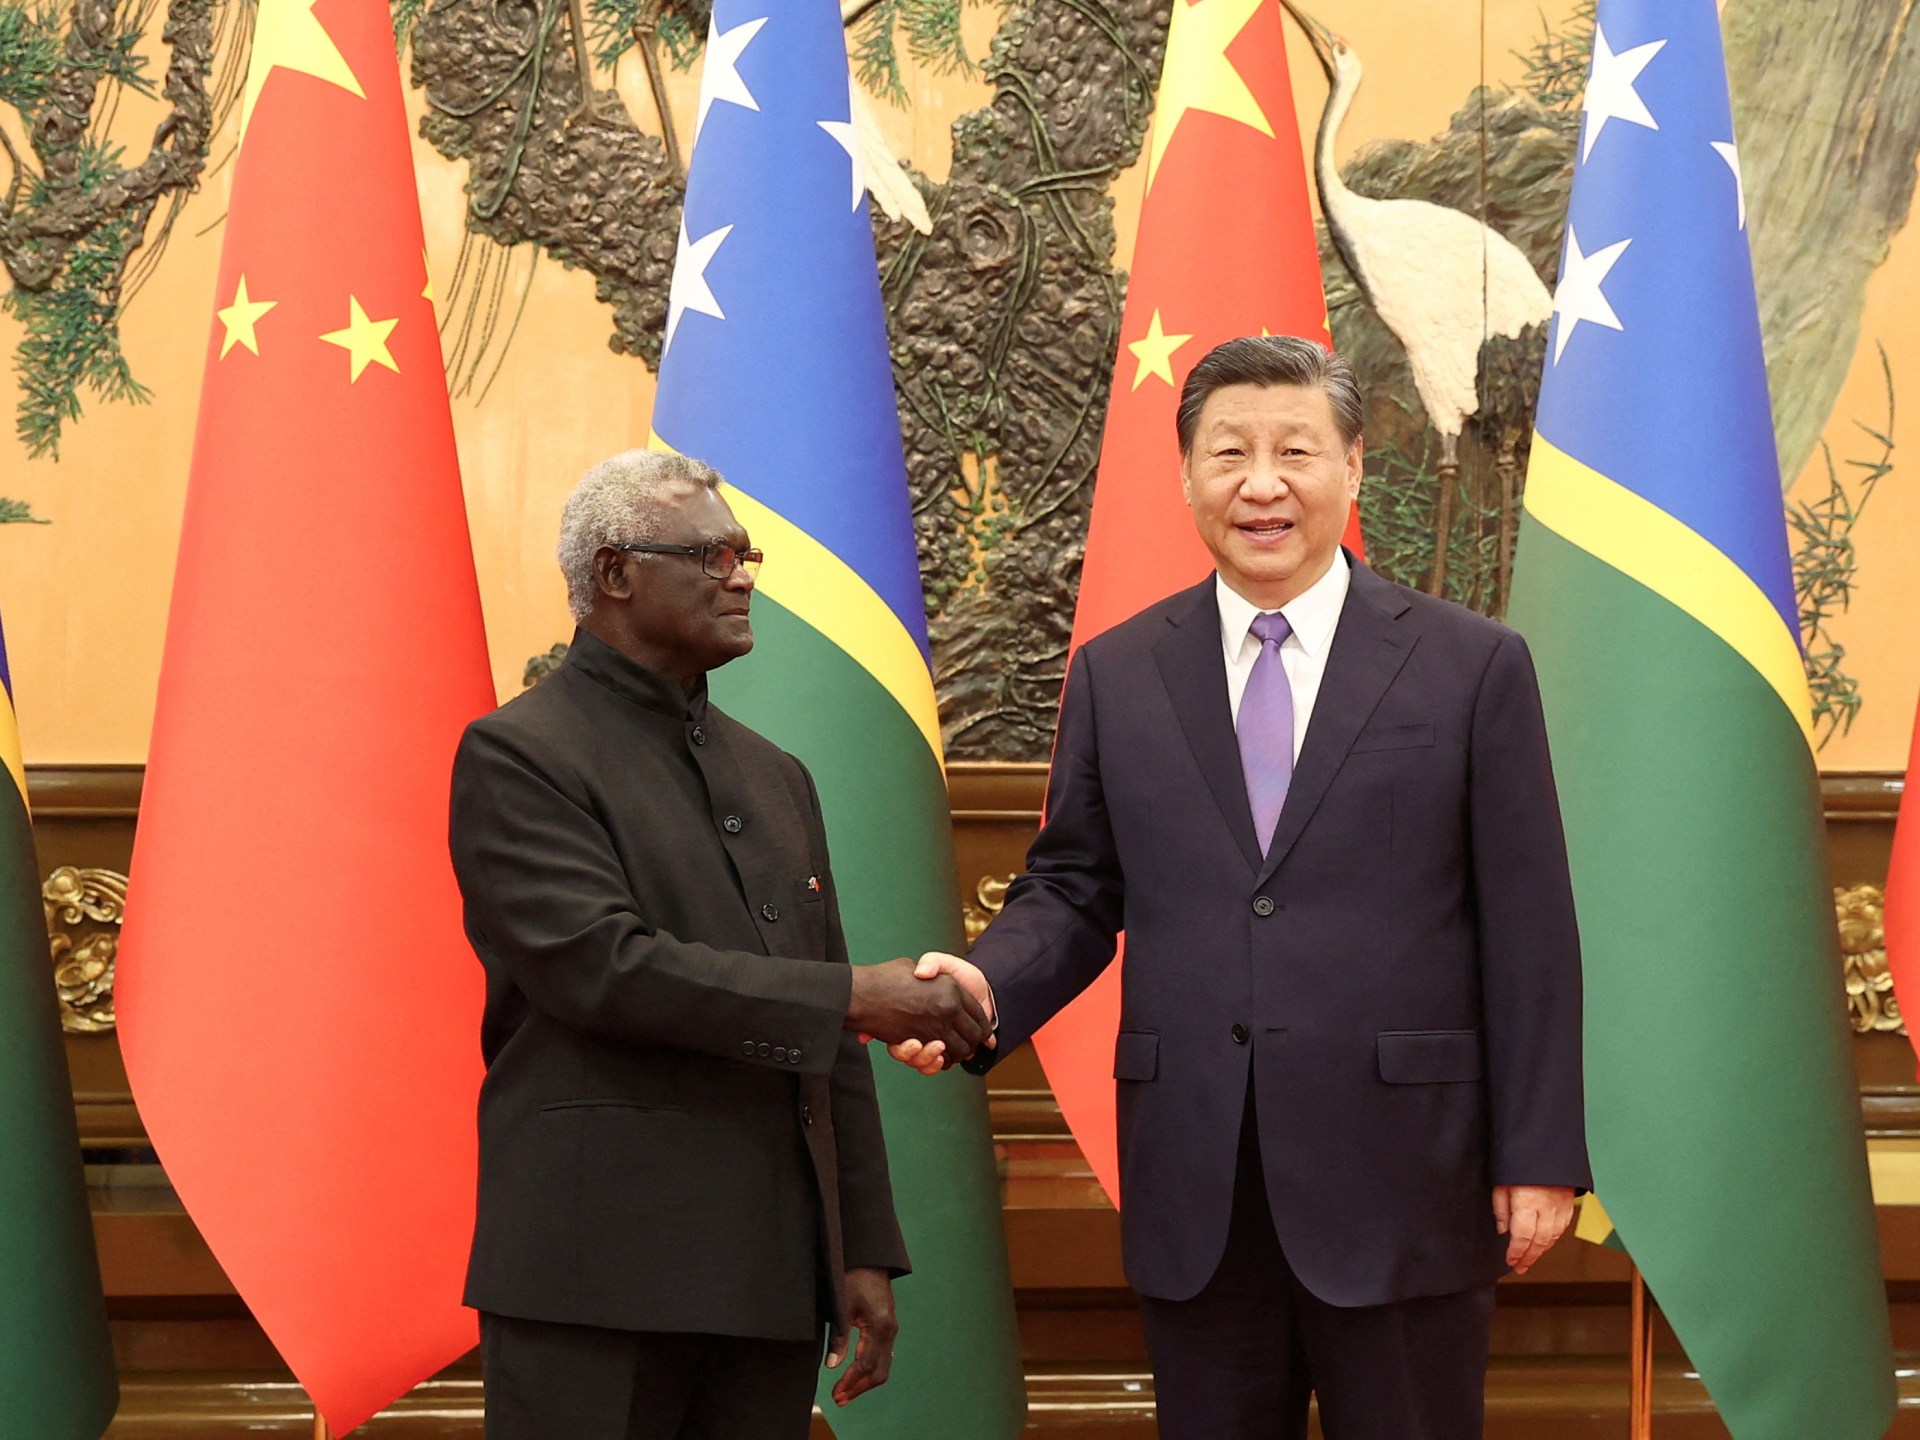 L’Australia “preoccupata” per l’accordo di polizia tra Cina e Isole Salomone |  notizie militari